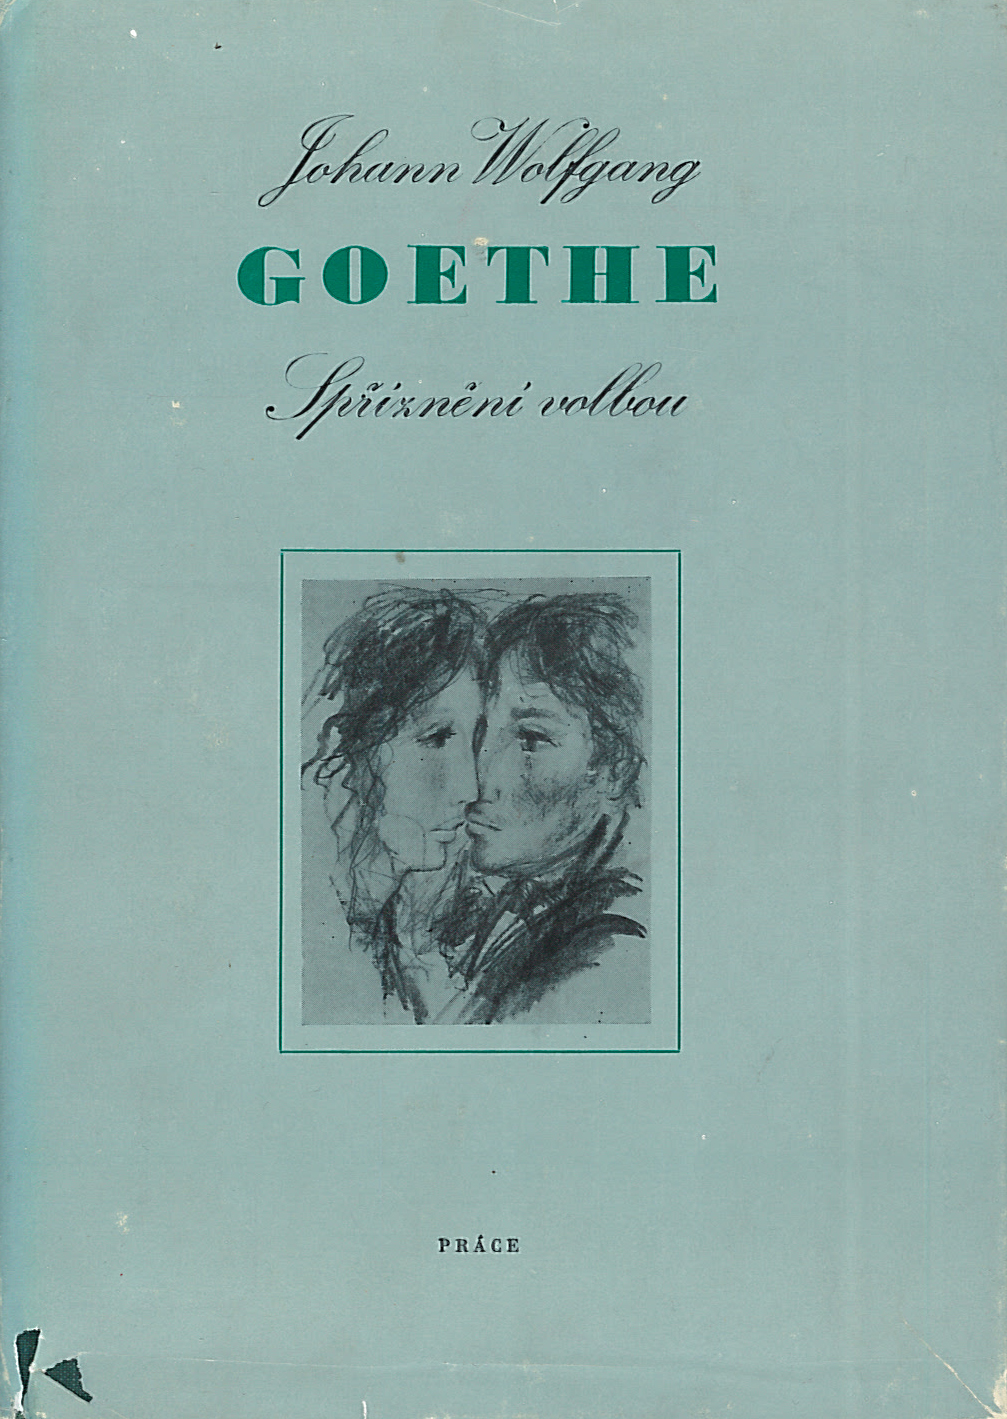 Spřízněni volbou (Johann Wolfgang Goethe)